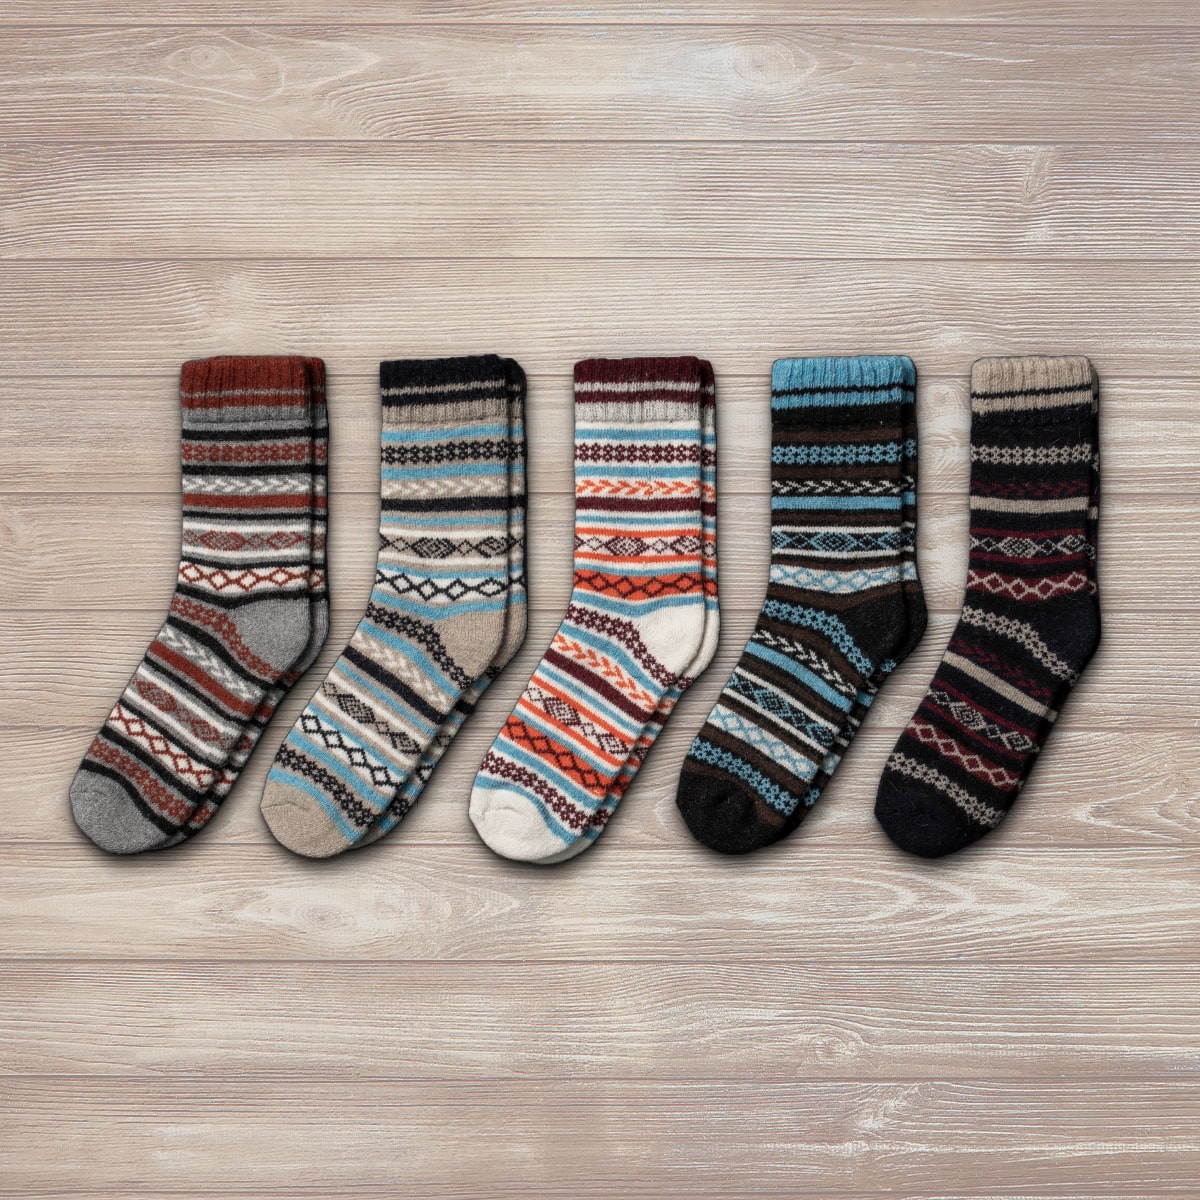 Happy Socks - NordicDesign  Moda uomo casual, Abbigliamento uomo, Moda uomo